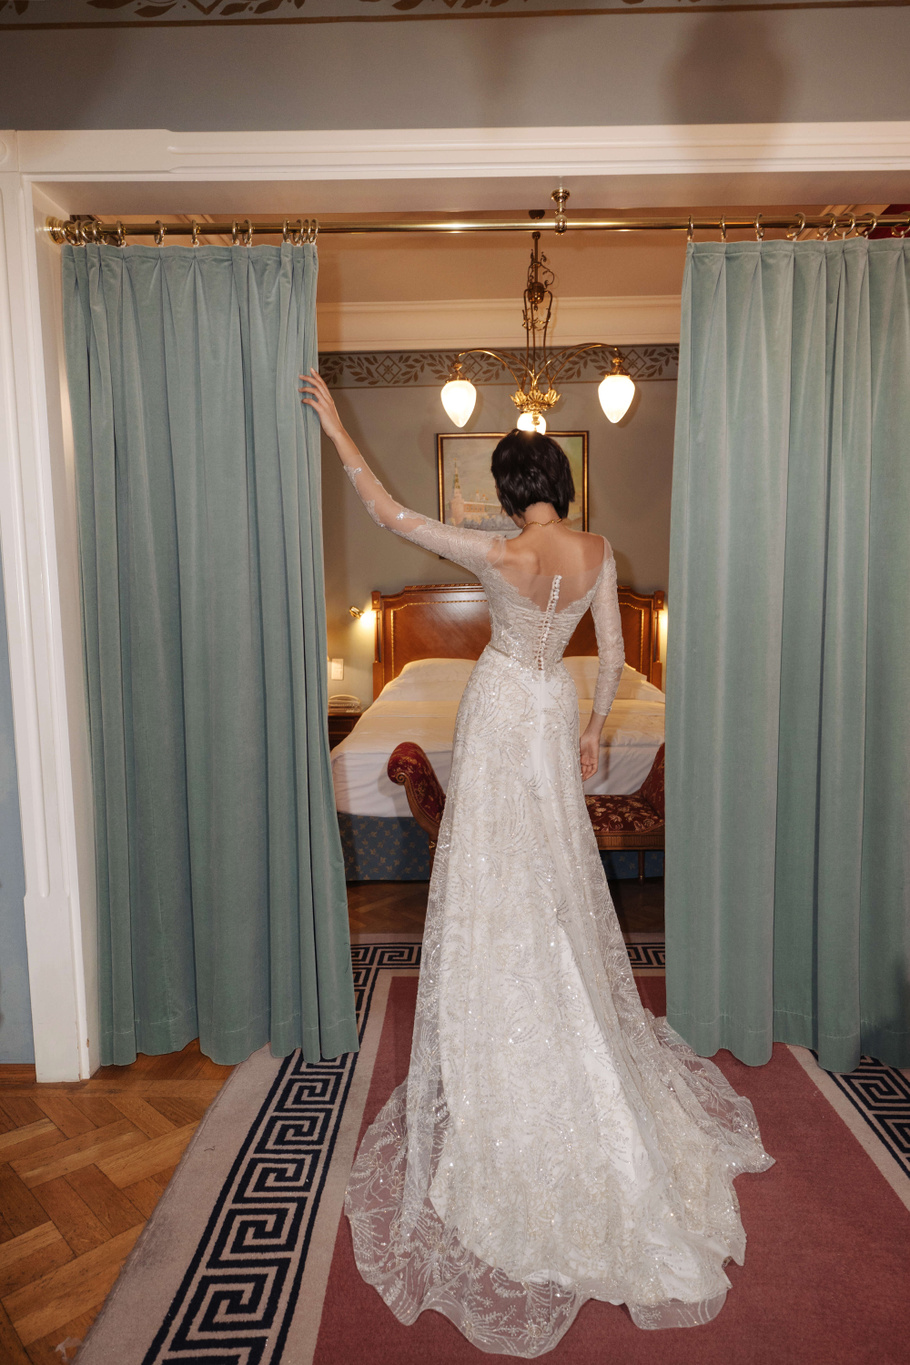 Купить свадебное платье «Киев» Анже Этуаль из коллекции Влюбиться 2022 года в салоне «Мэри Трюфель»